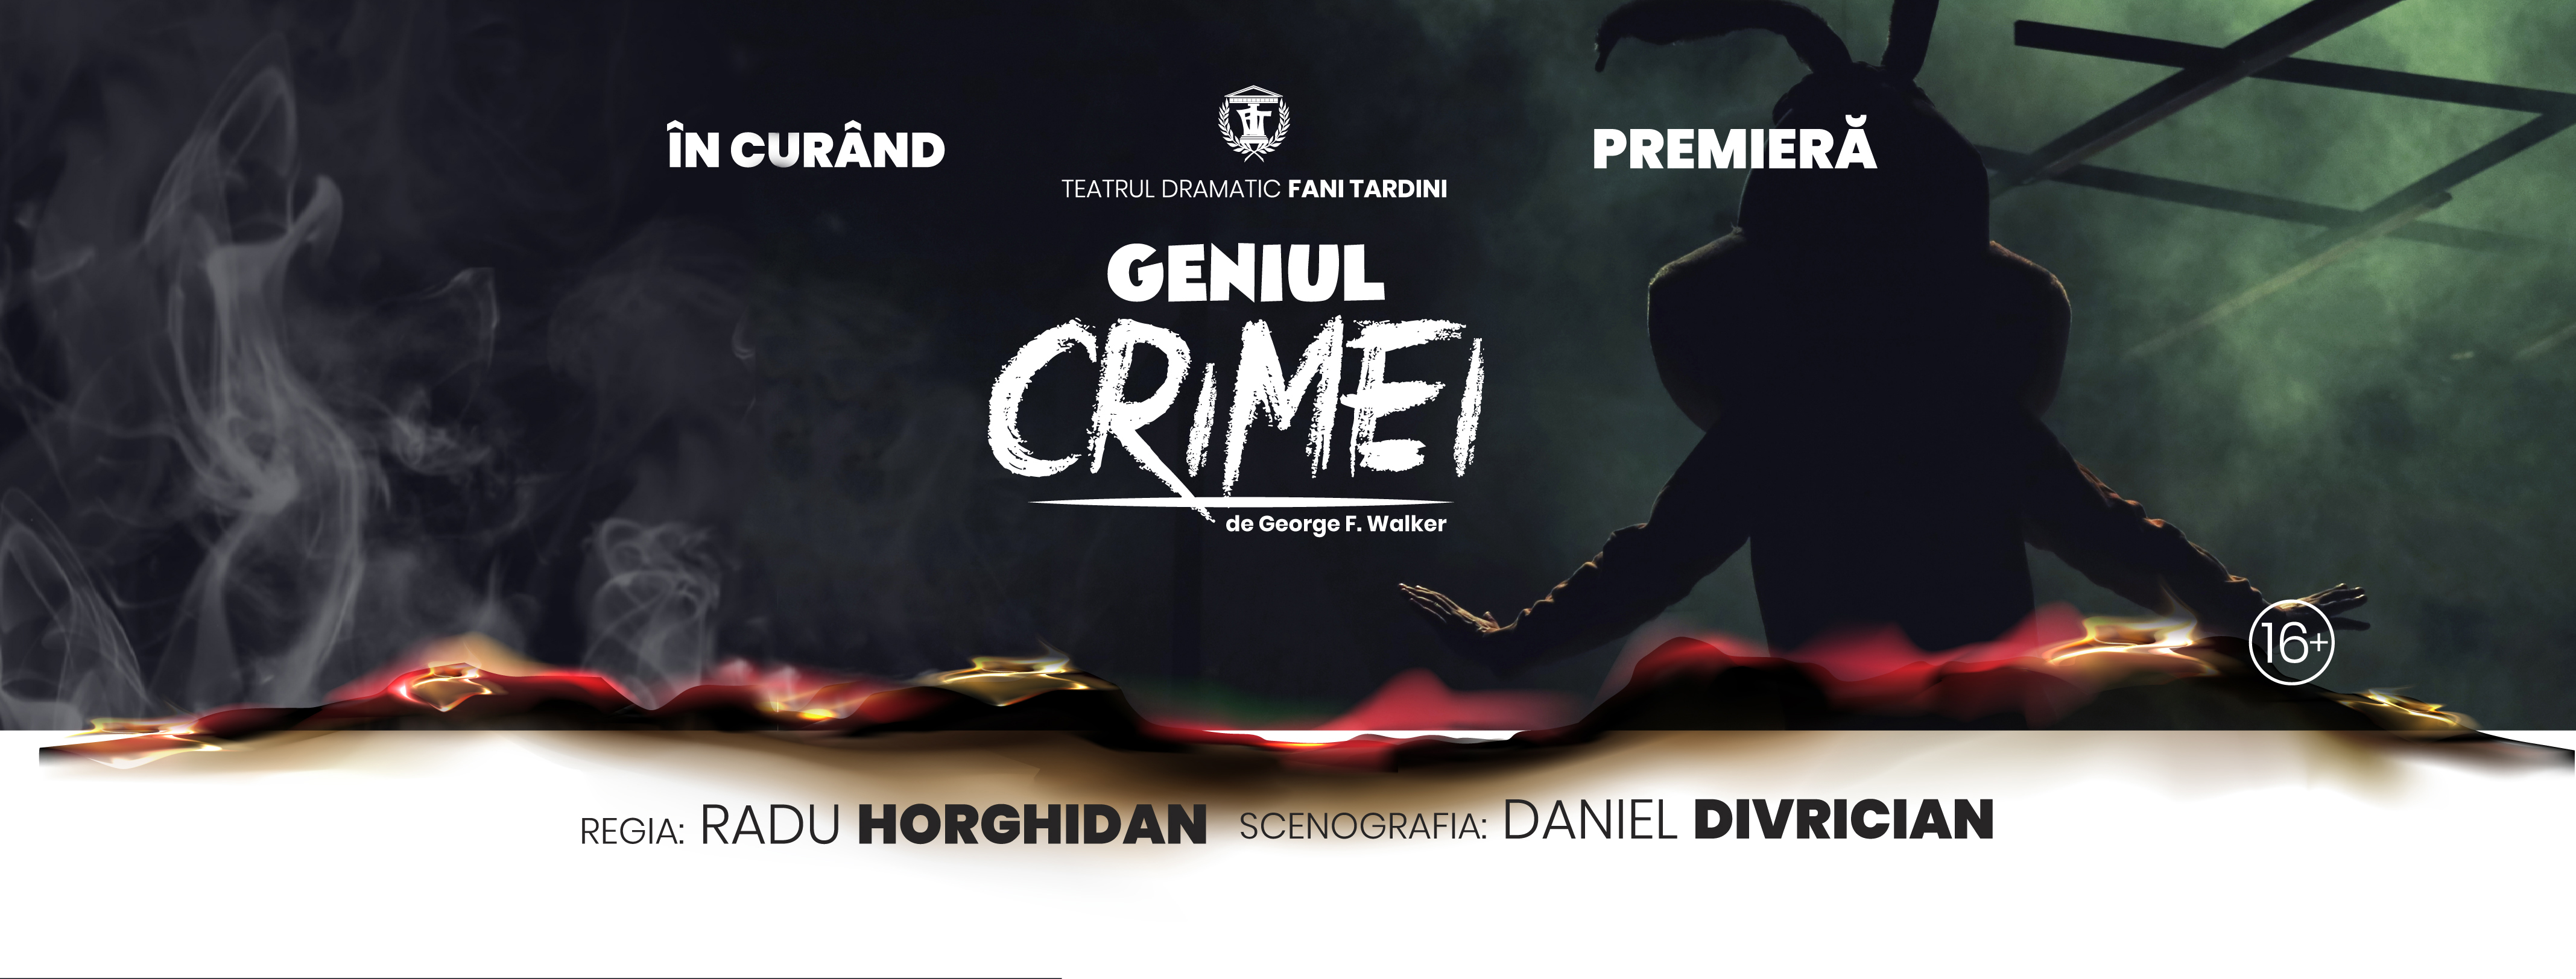 Premieră: GENIUL CRIMEI | 16 octombrie @Sala Mare